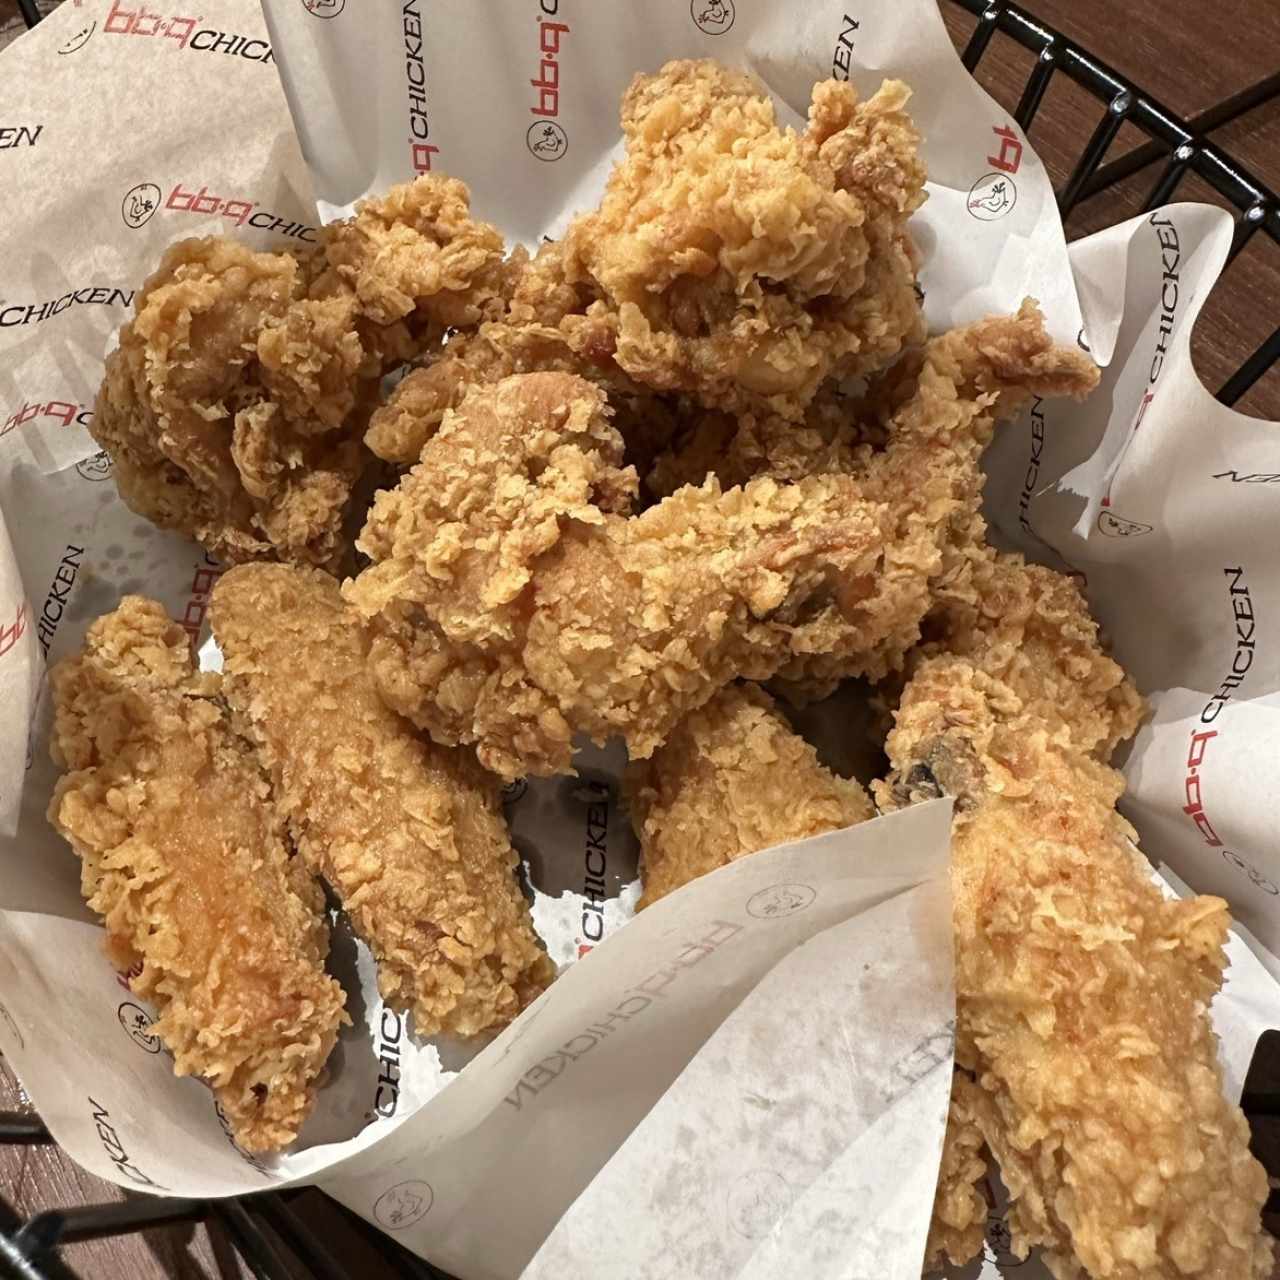 Whole Chicken - Golden Original